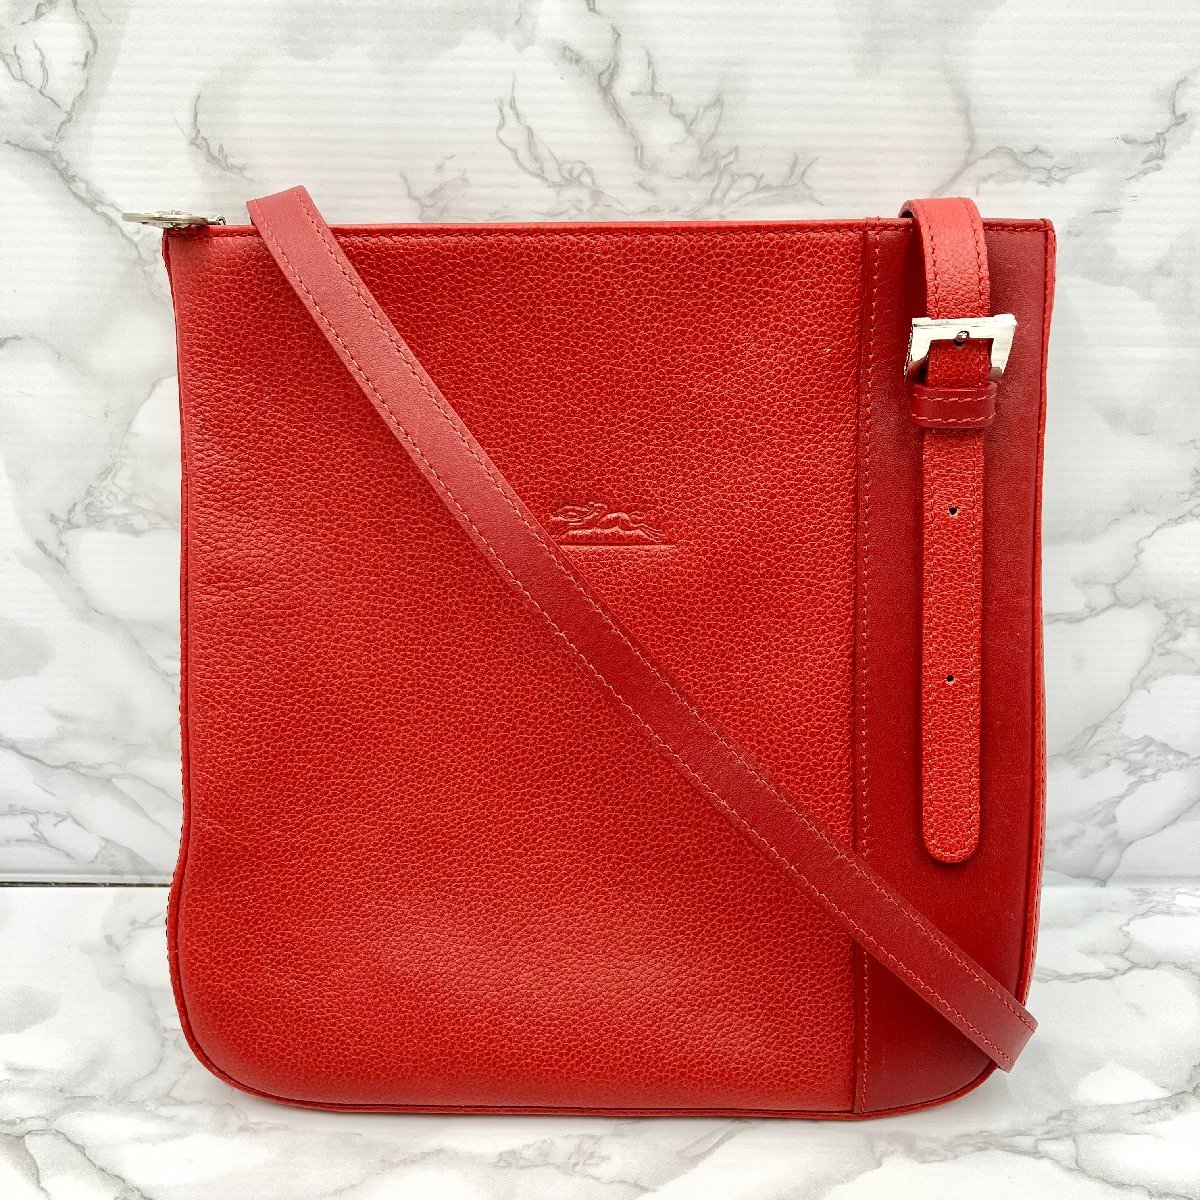 【美品】LONGCHAMP ロンシャン レザー ショルダーバッグ レッド 赤 斜め掛け 鞄 カバン レディース バッグ